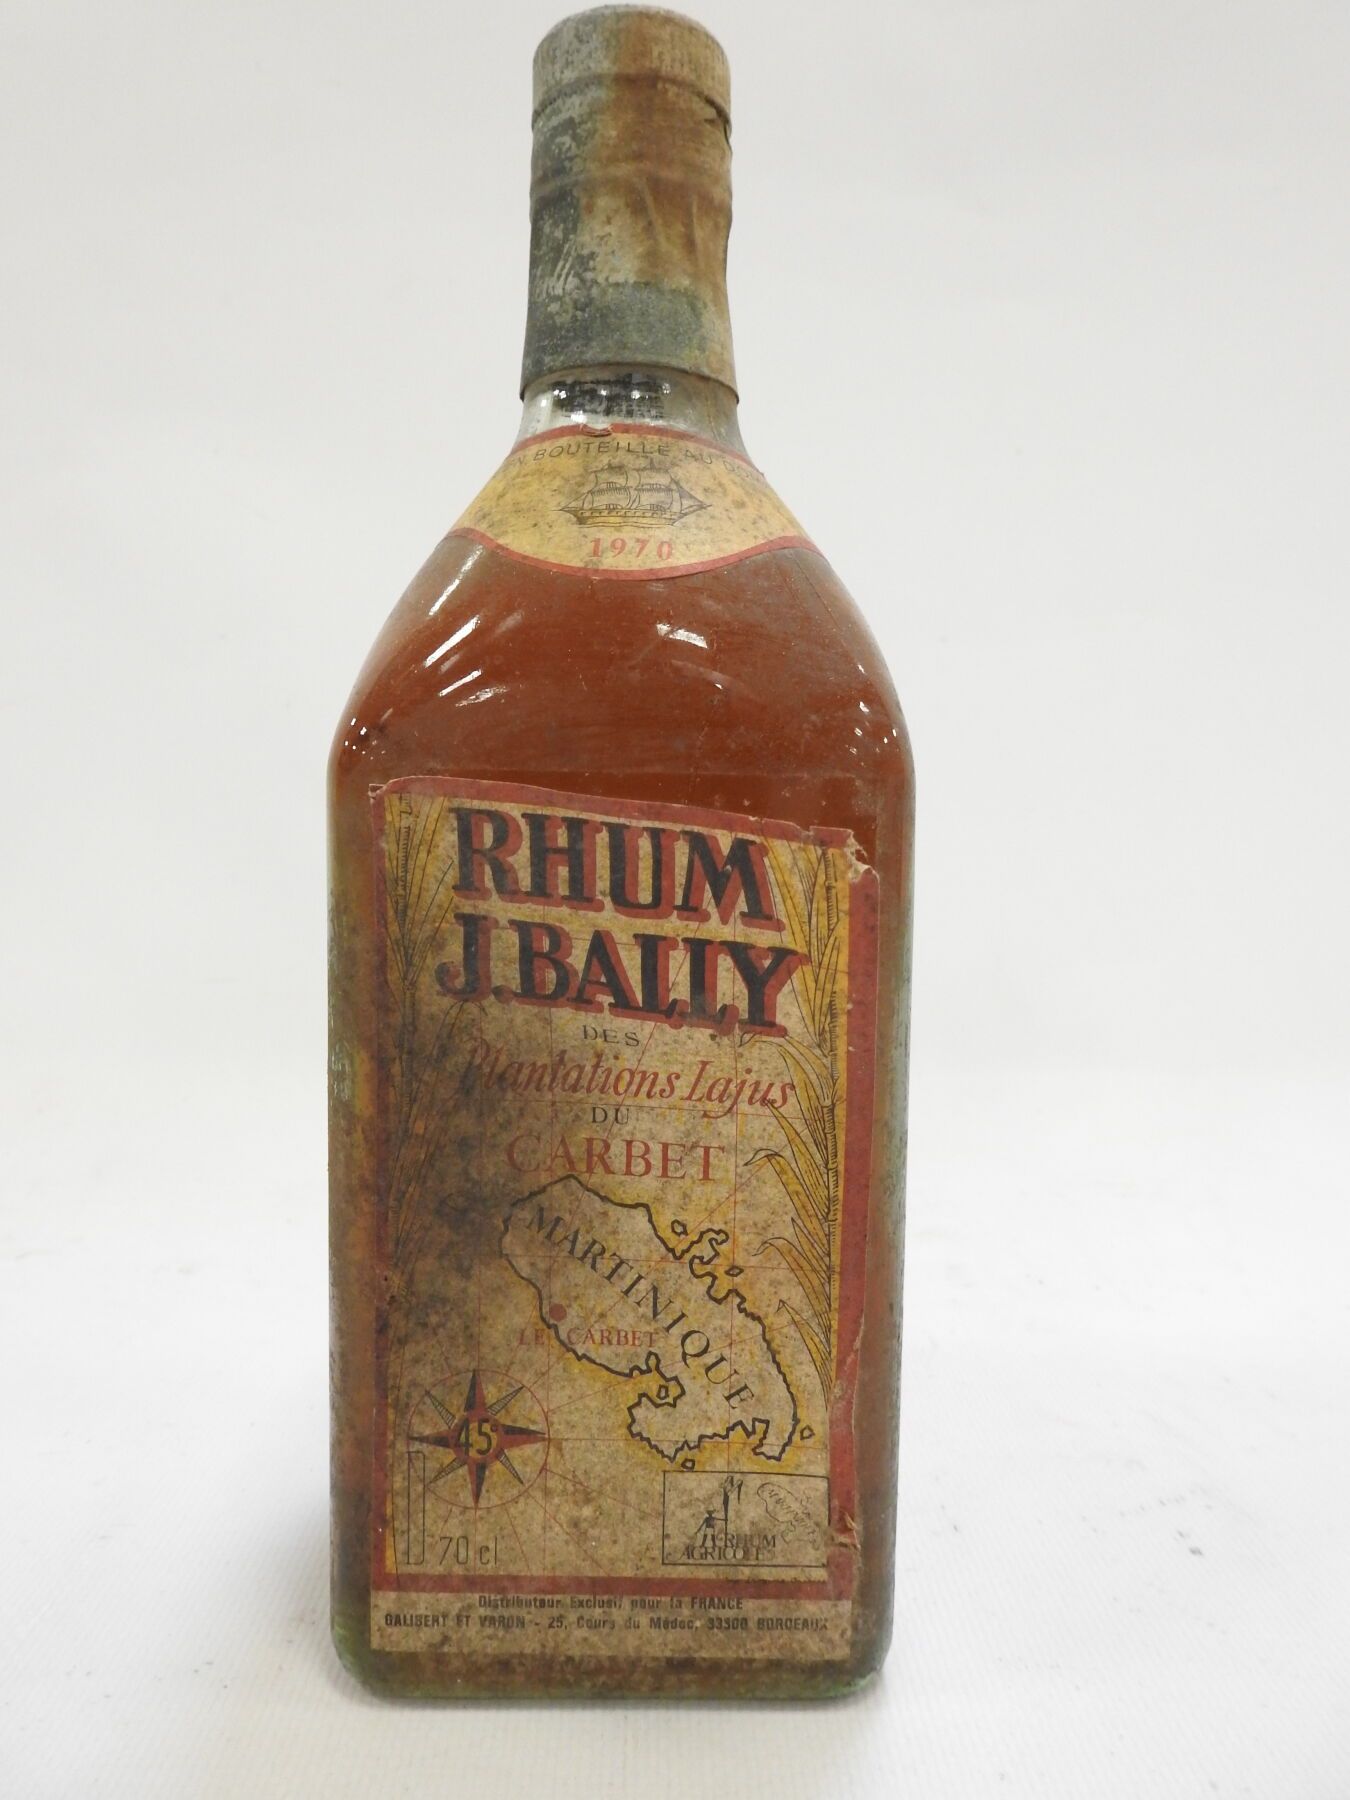 Une bouteille de RHUM J.Bally des plantations Lajus du C…